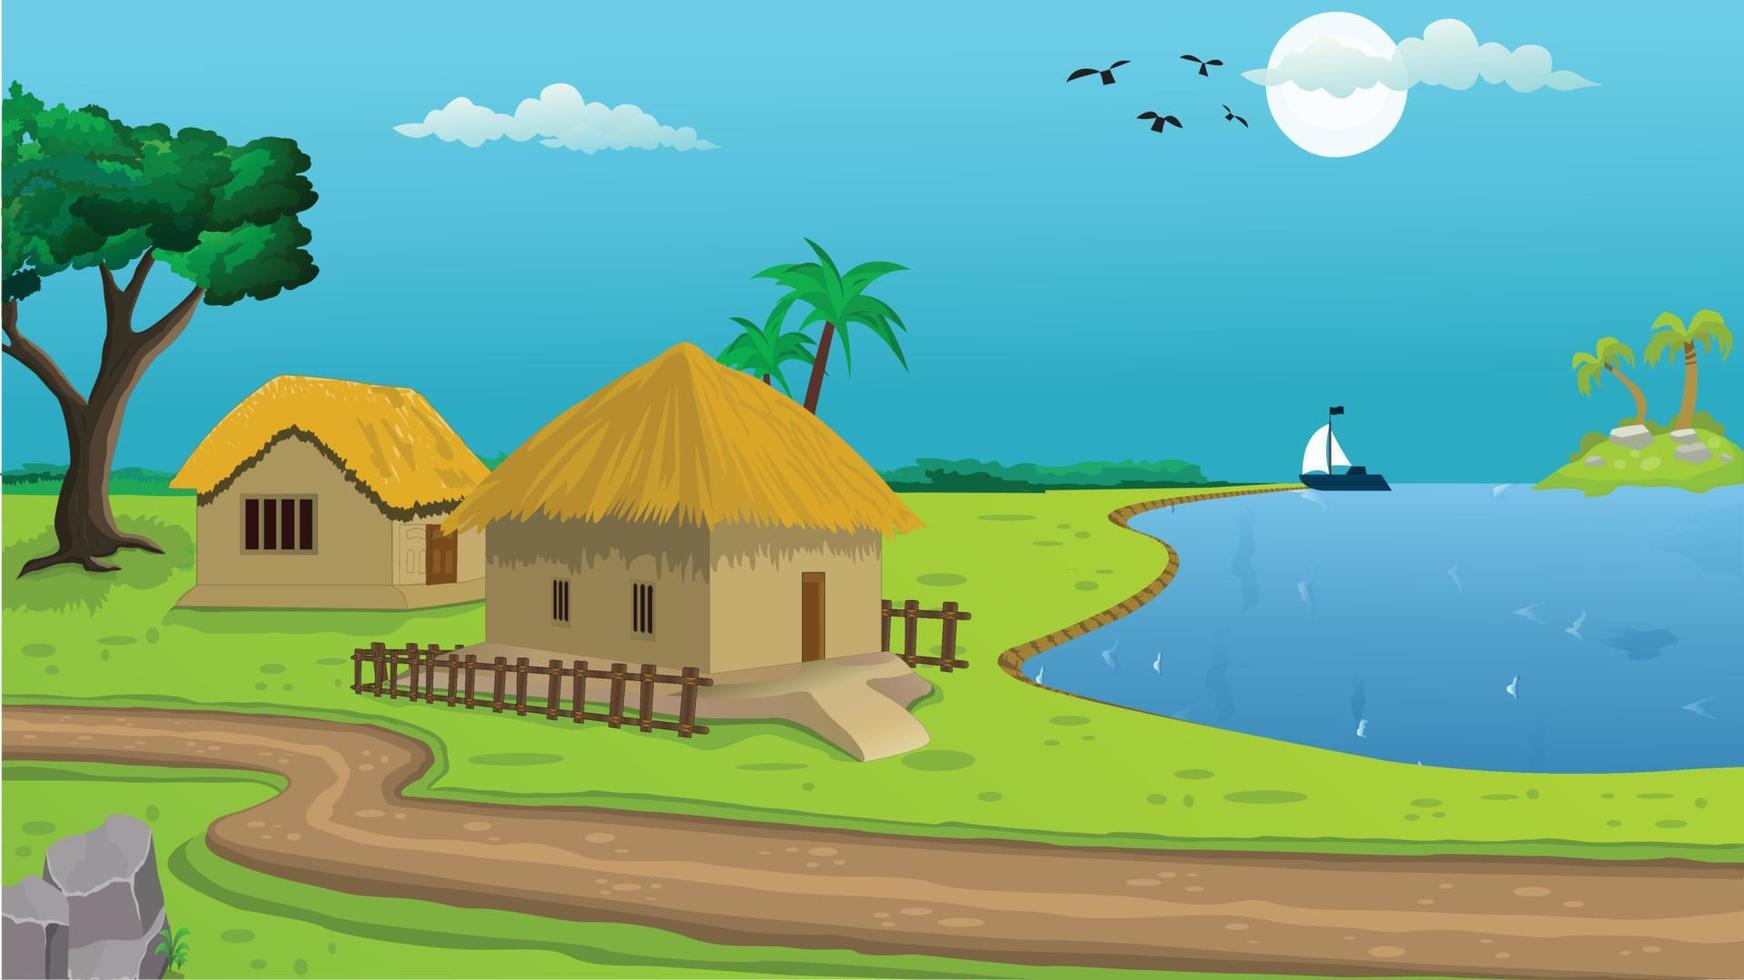 illustration de fond de dessin animé de village avec soleil, chalet, lac, arbres et route étroite. vecteur